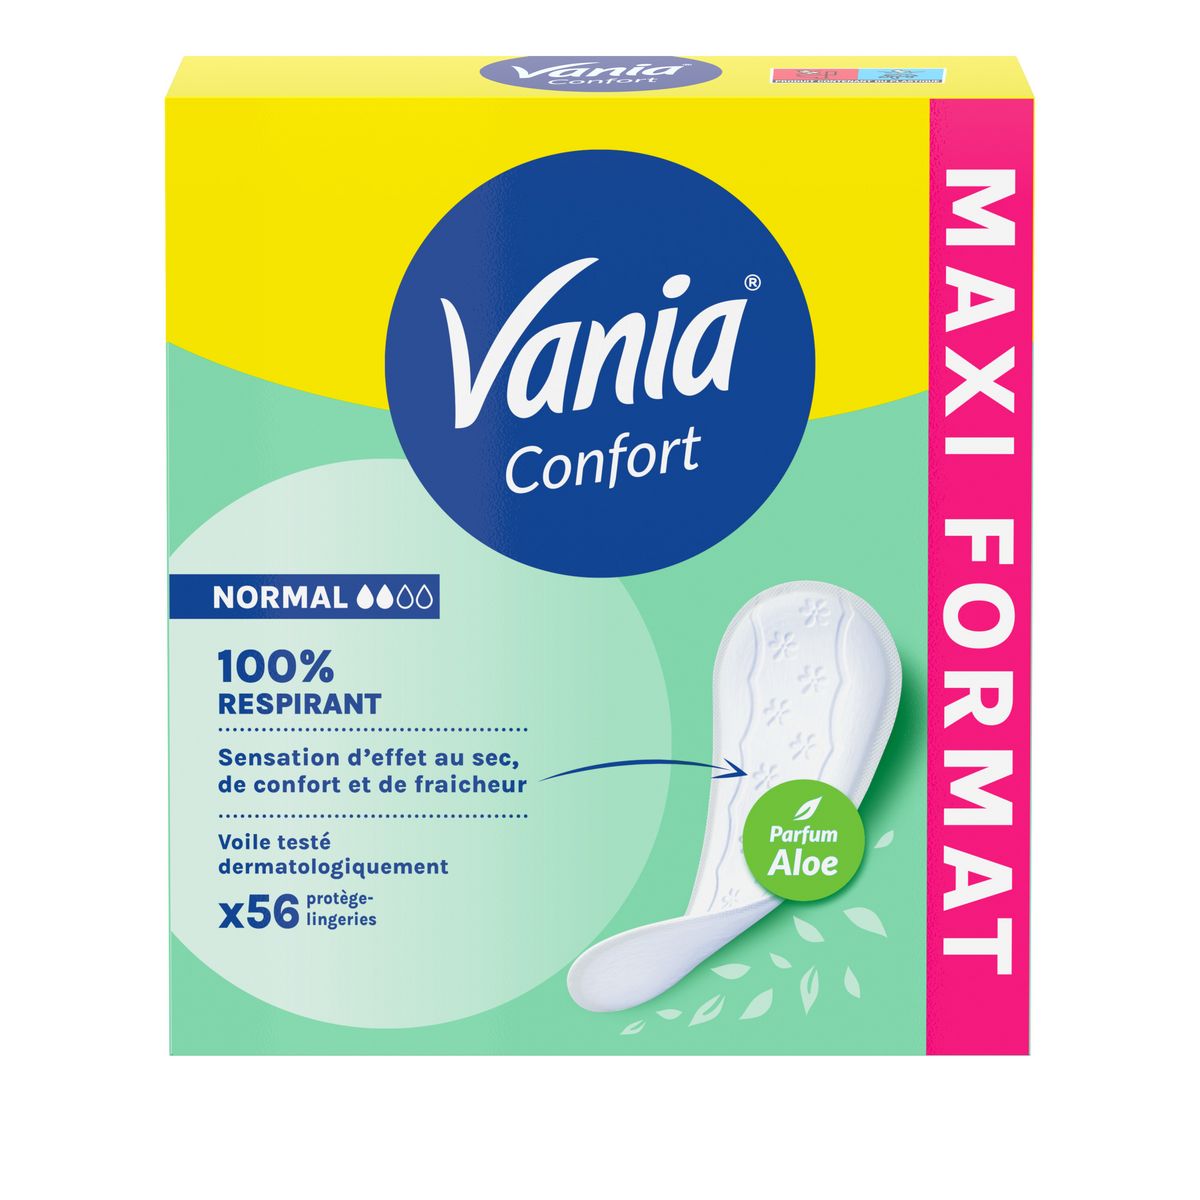 VANIA Confort Protège lingeries normal parfum aloe 56 protège-lingeries